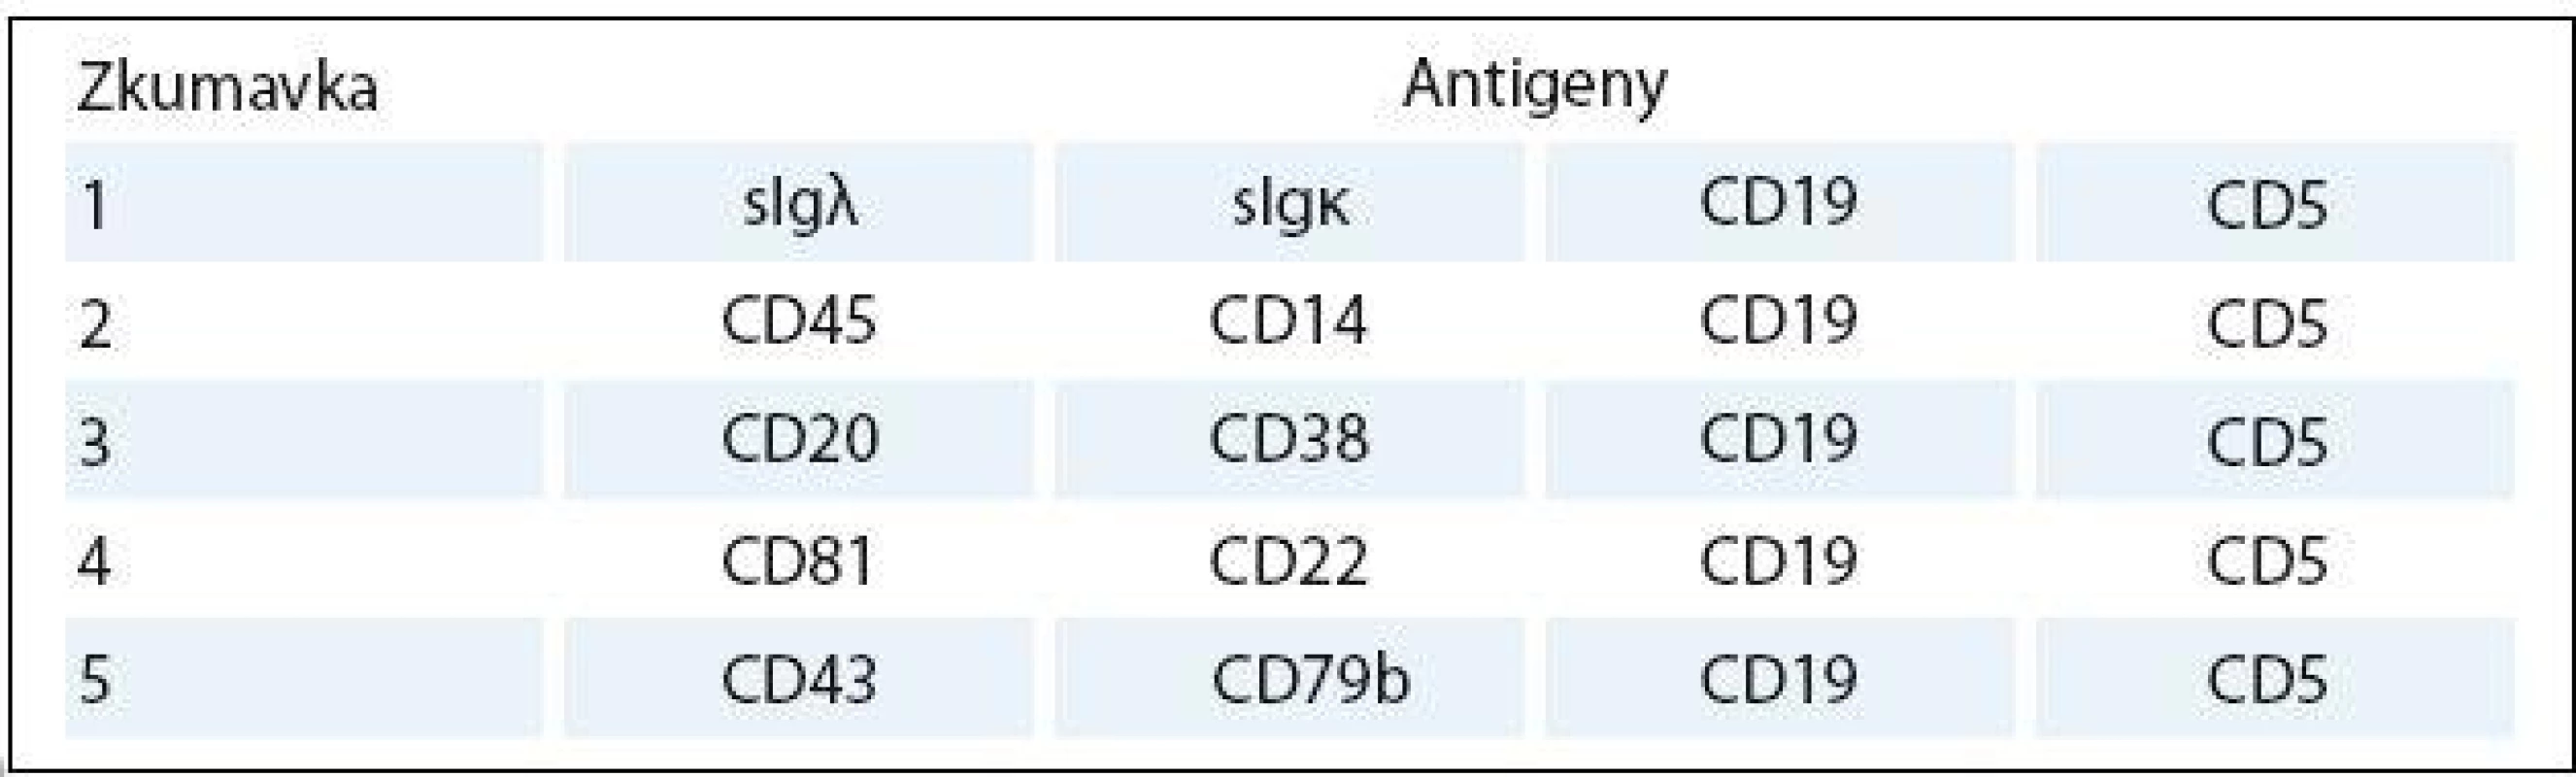 Antigeny, proti kterým jsou namířeny monoklonální protilátky při testování MRN pomocí čtyřbarevné průtokové cytometrie [16].